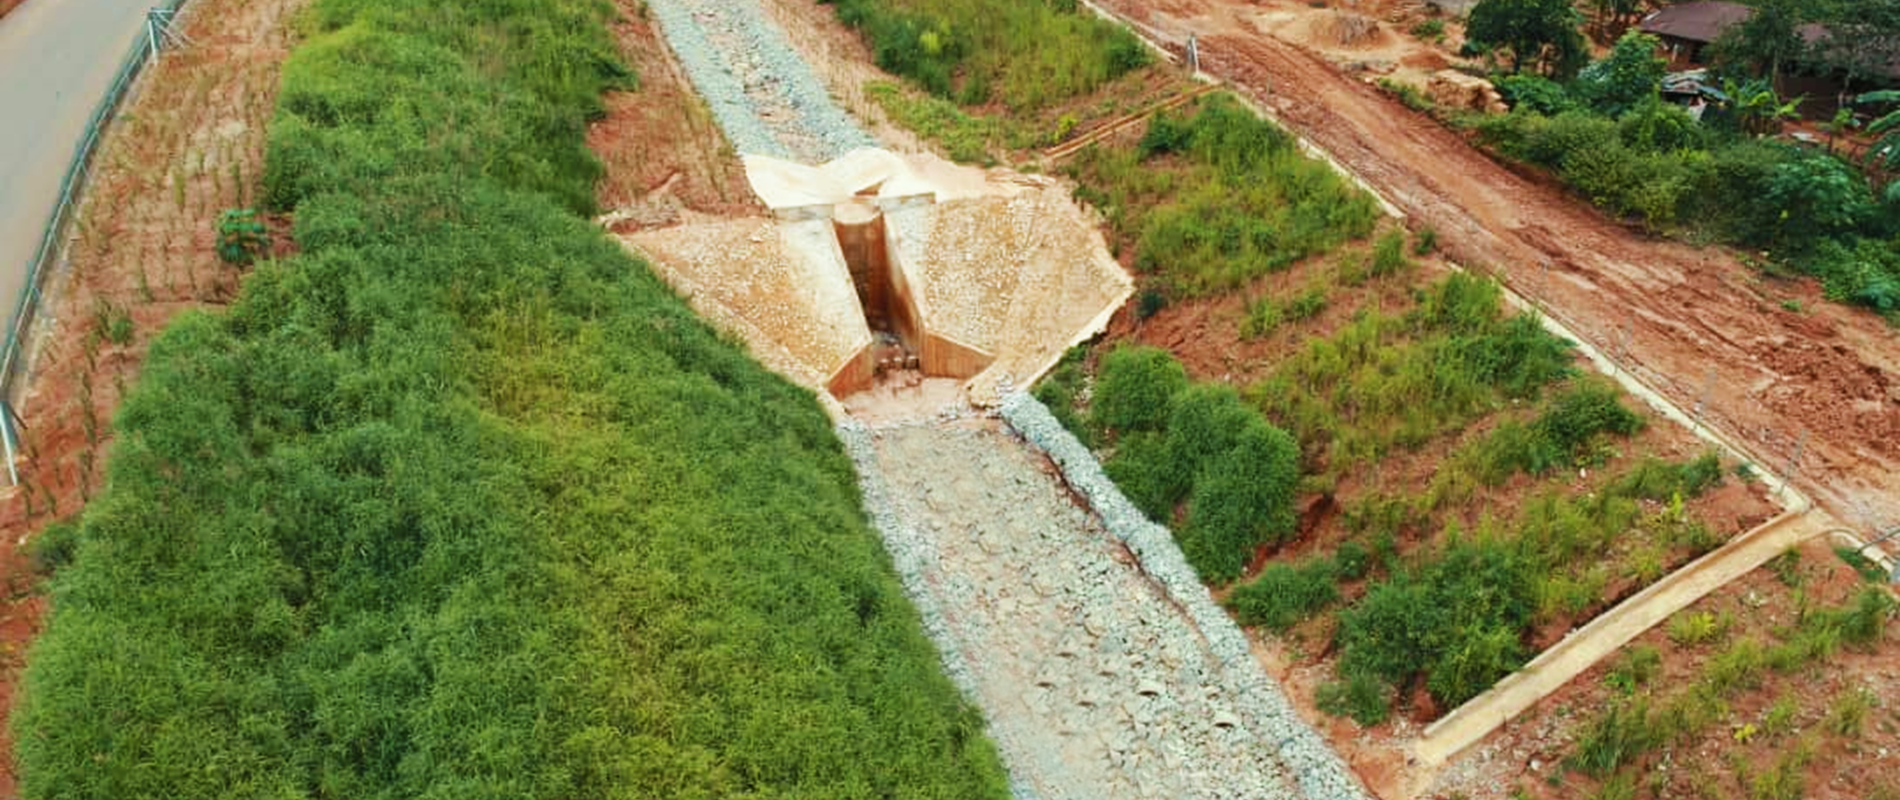 Rehabilitation of Ogbe‐Okwe‐Ukwu‐Nzu Erosion Site